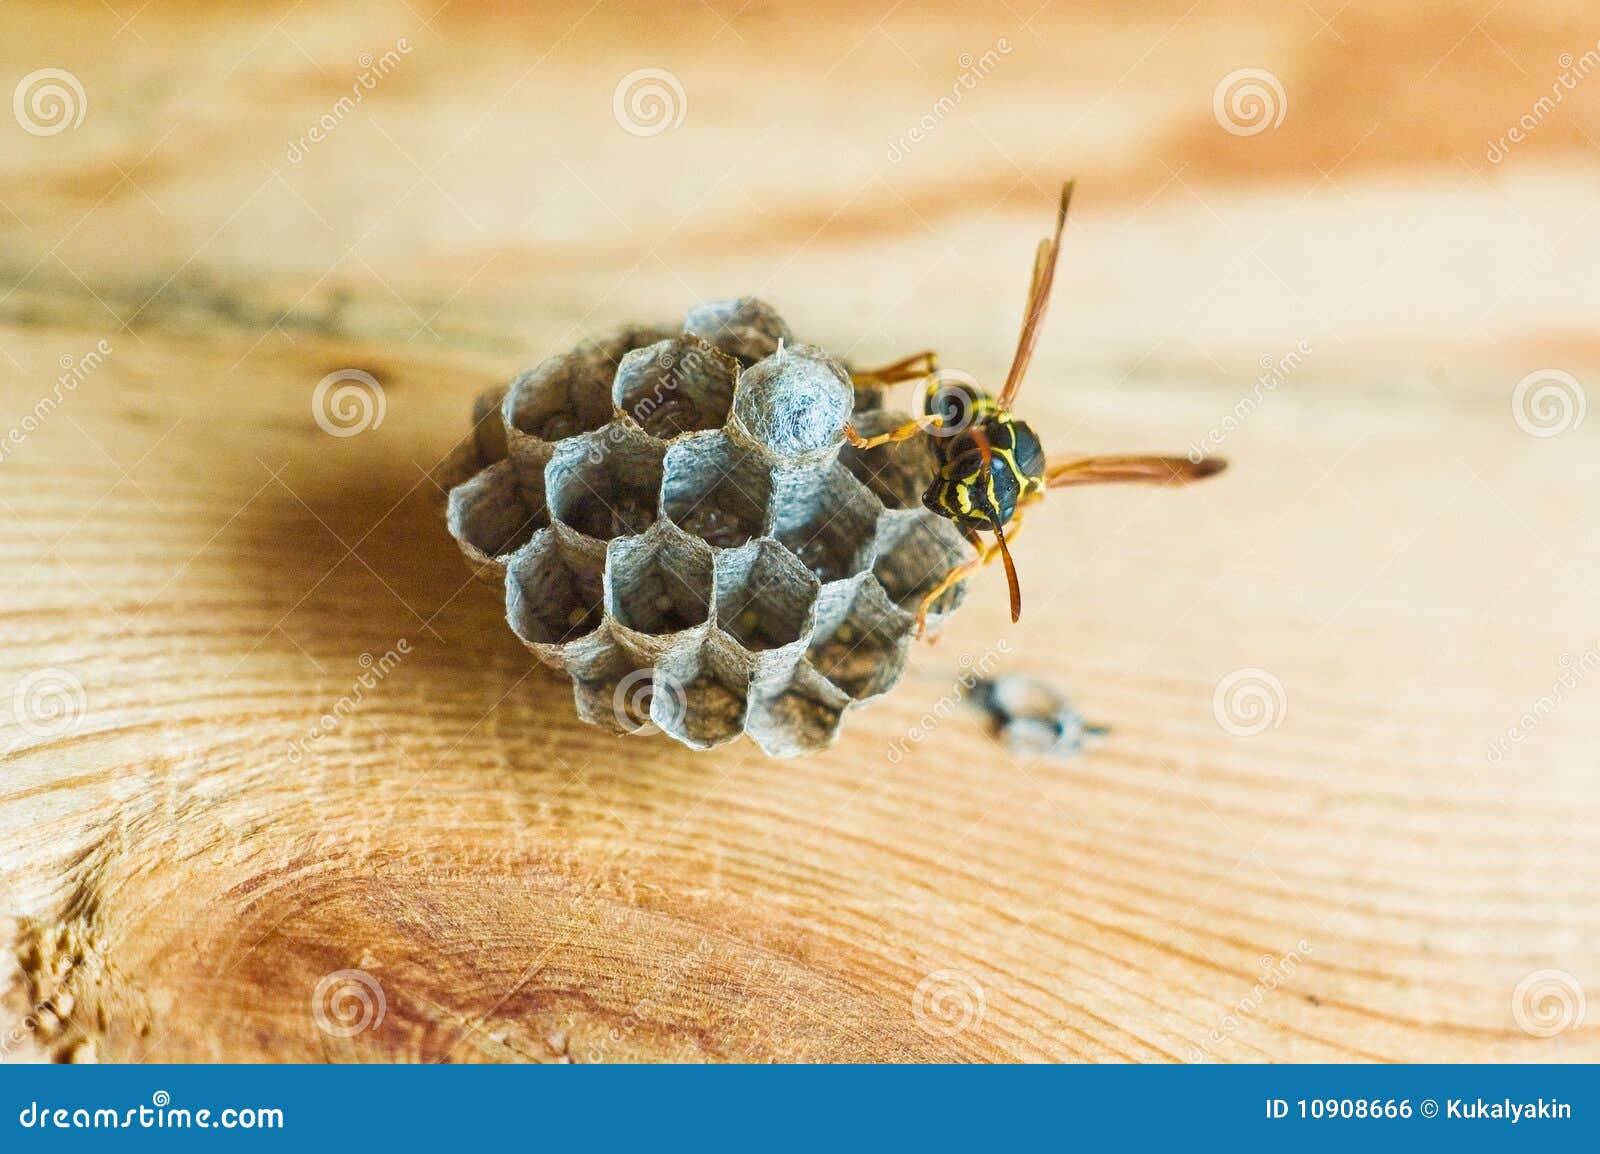 Wasp Hive